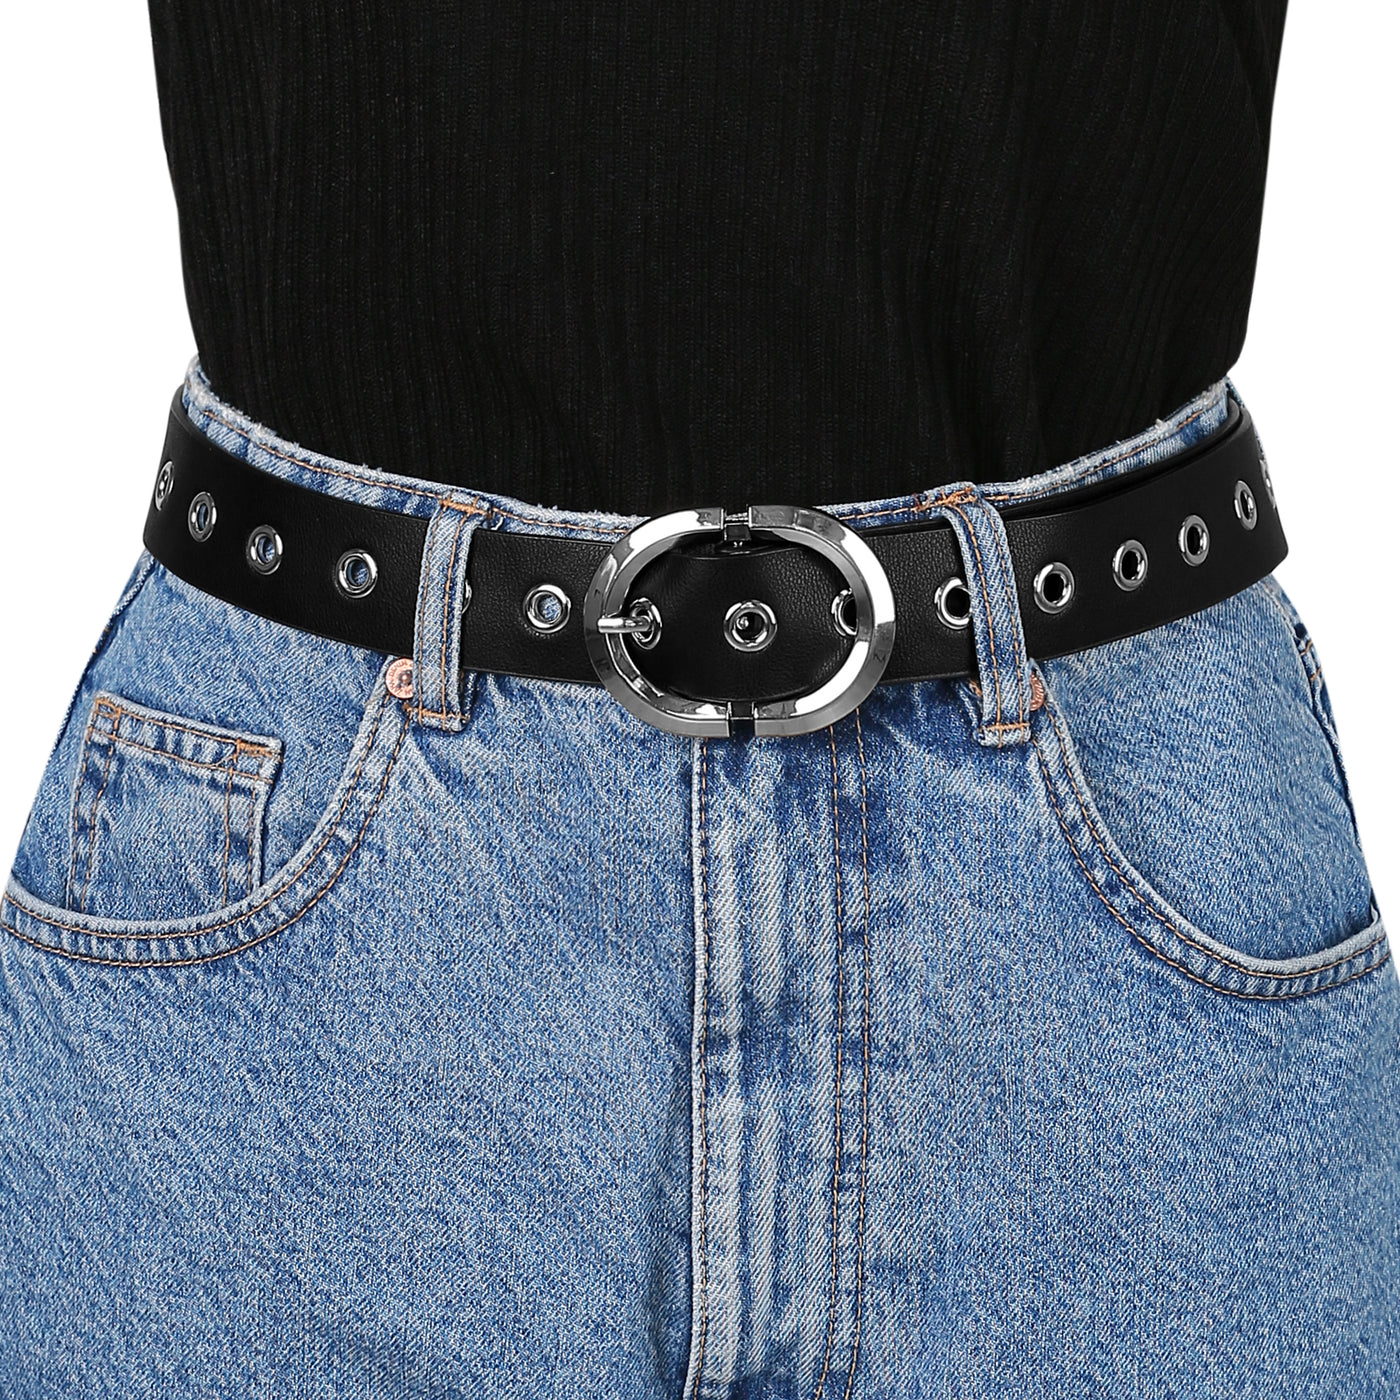 Allegra K Grommet PU Leather Skinny Plus Size Waist Jeans Dress Belts